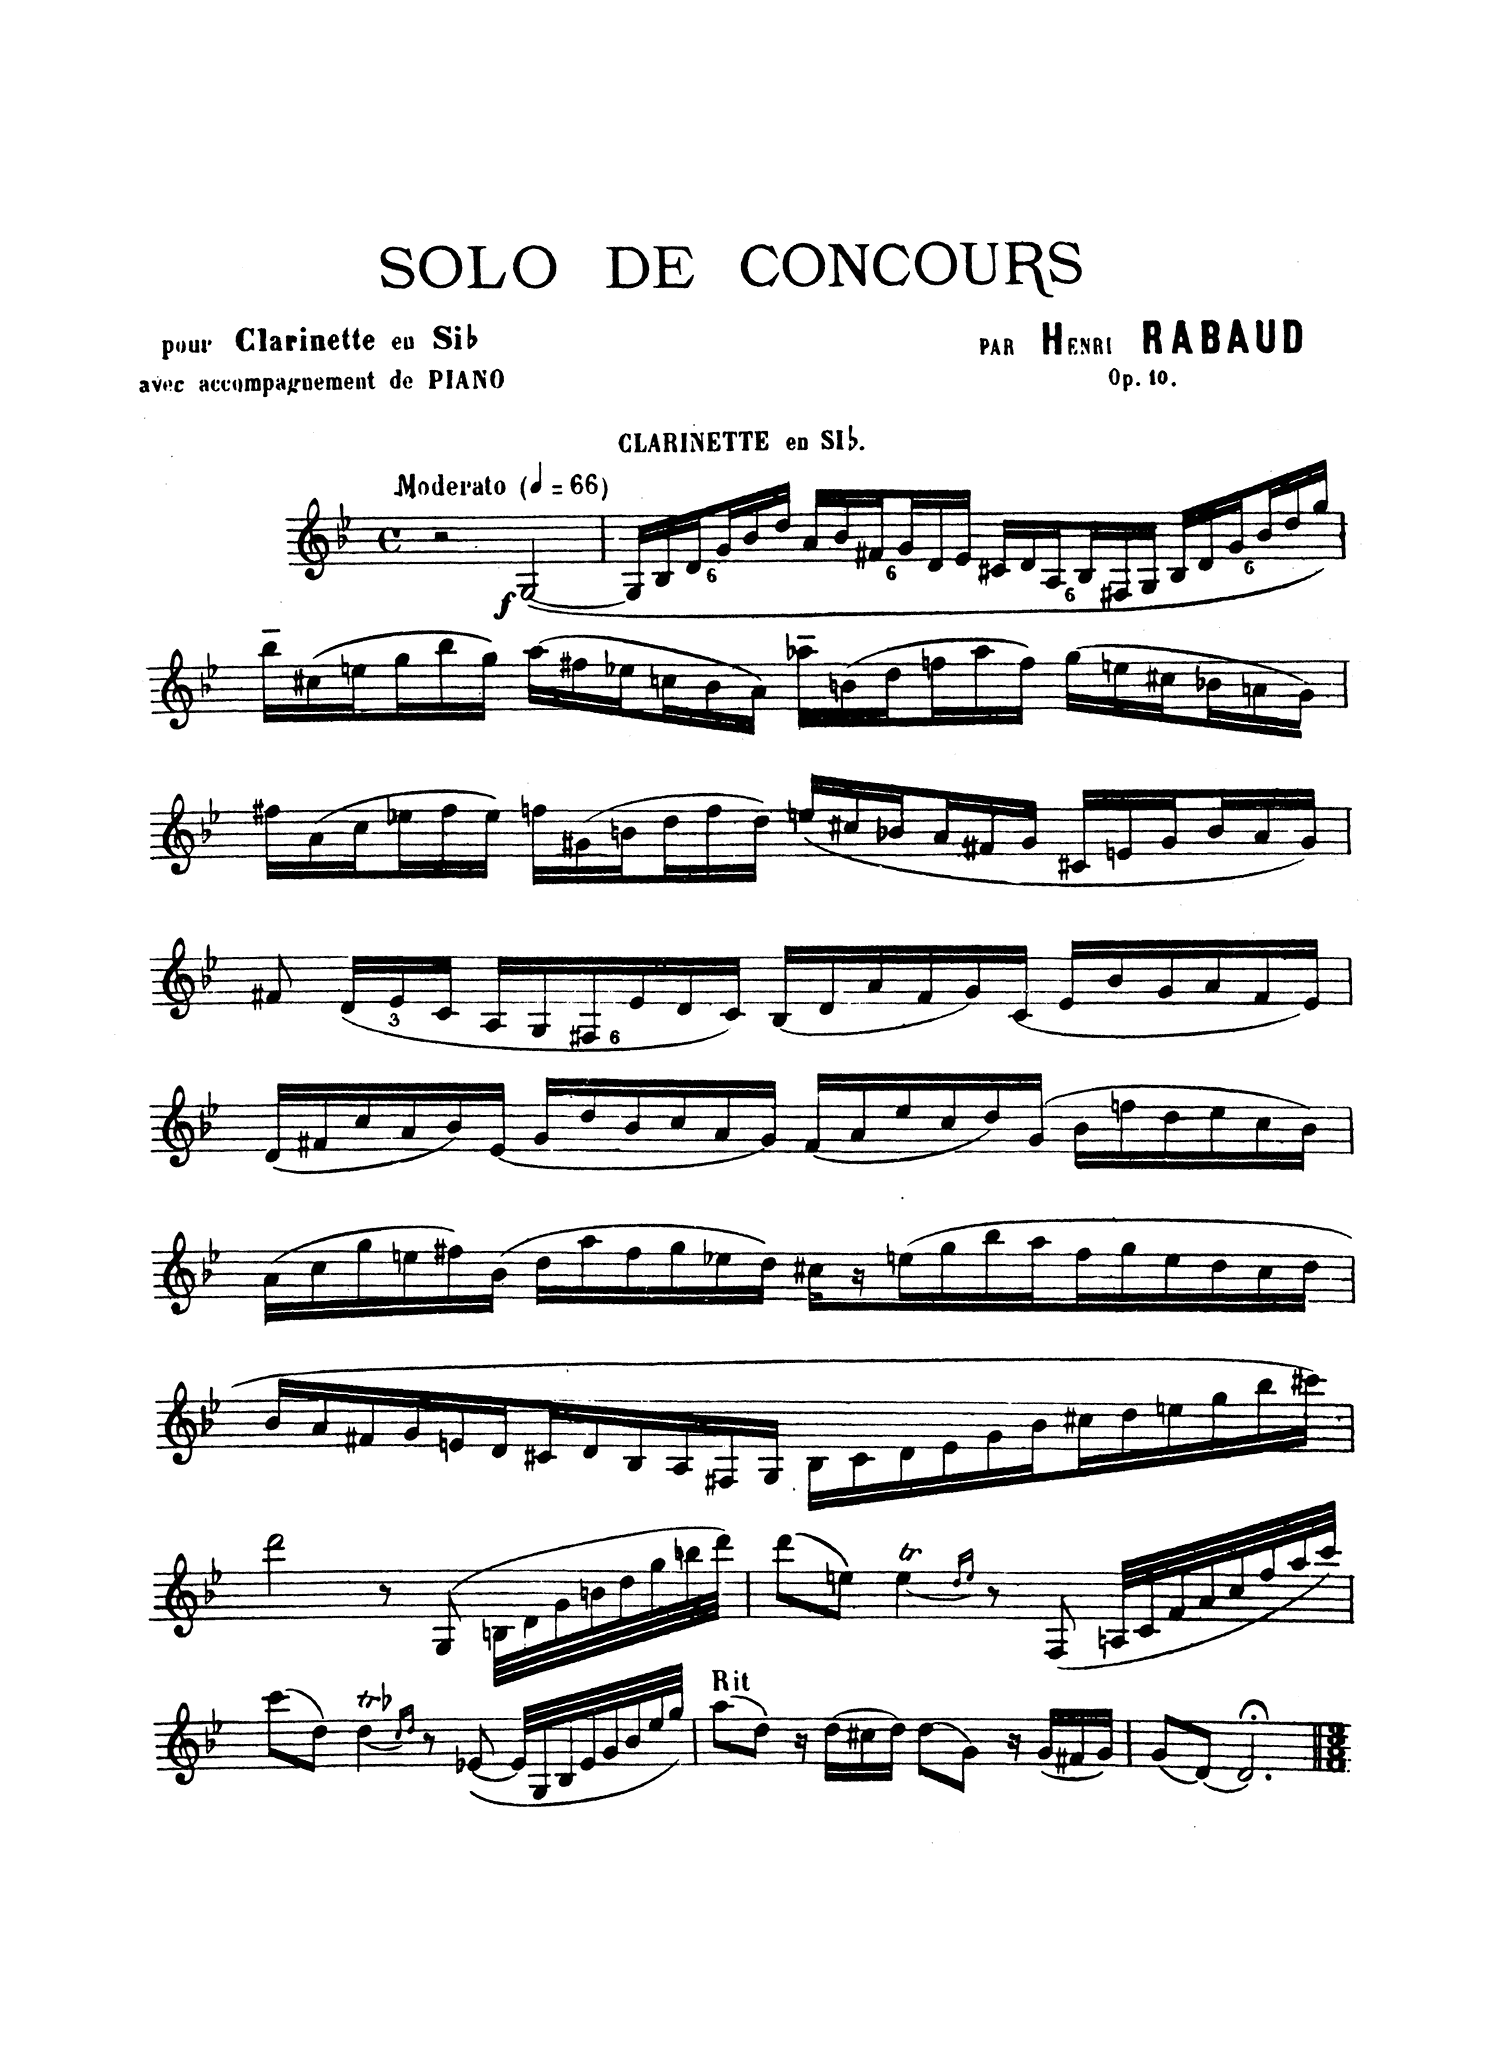 Rabaud Solo de concours, Op. 10 Clarinet part